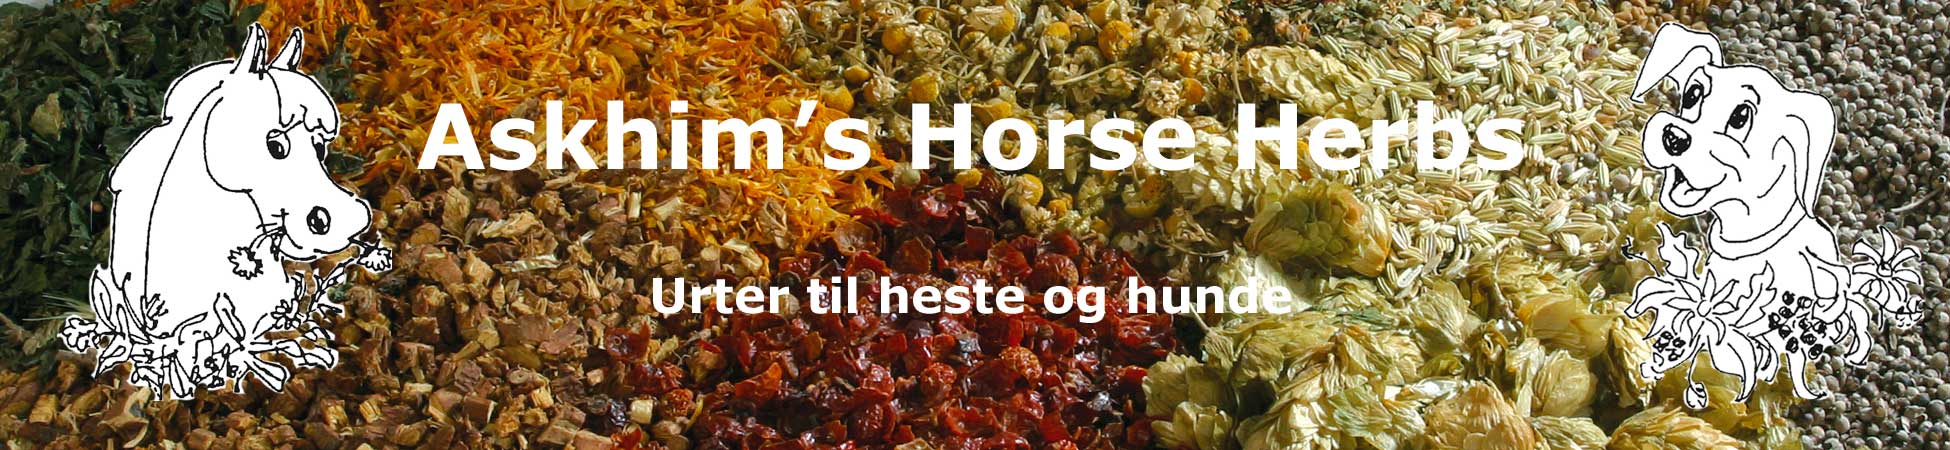 Askhim.dk har et stort udvalg af urter til heste og hunde